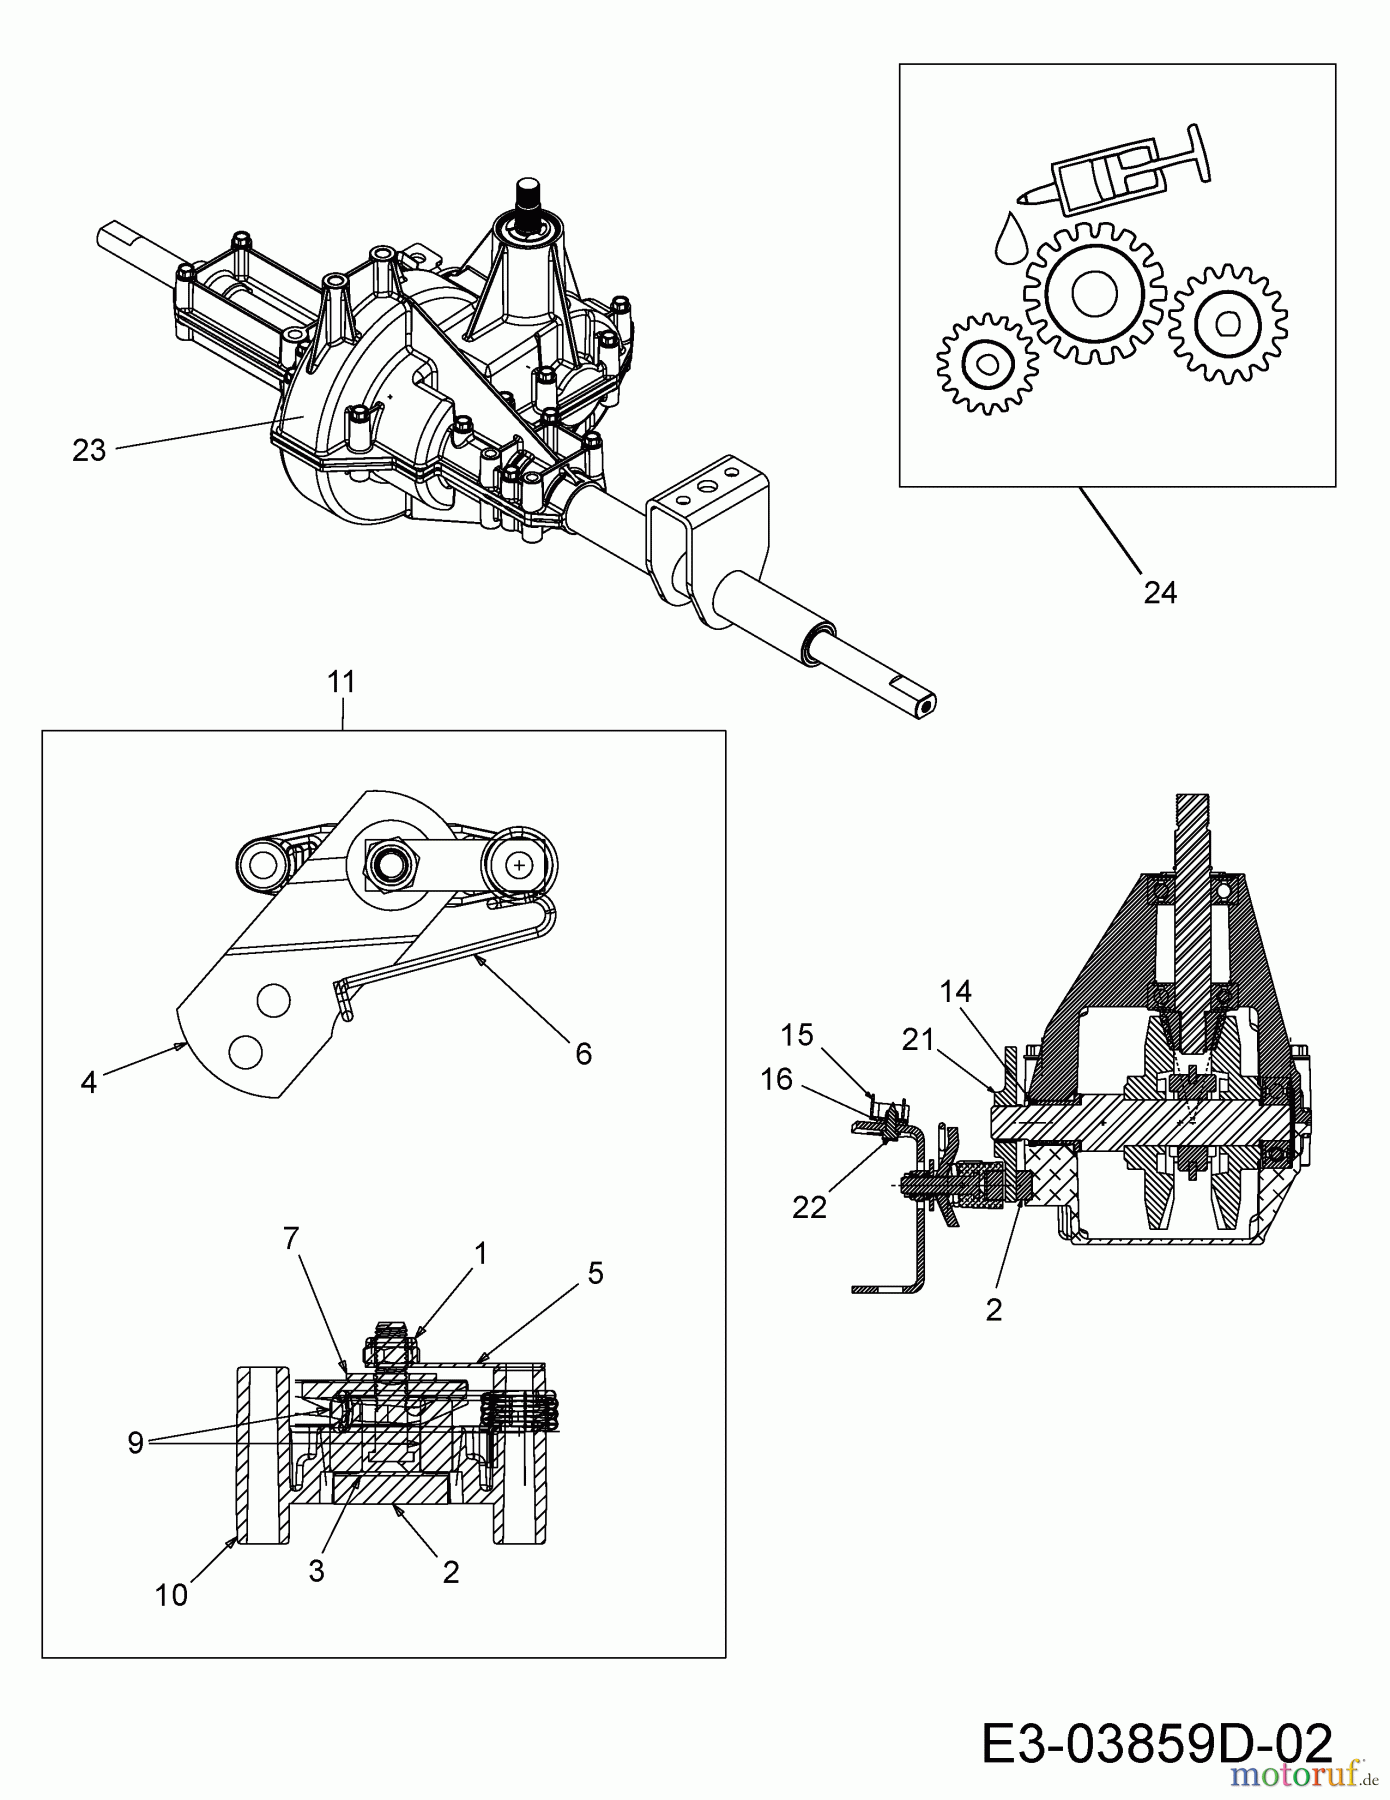  Qualcast Rasentraktoren LT 125-92 13HH765E639  (2014) Bremse, Getriebe